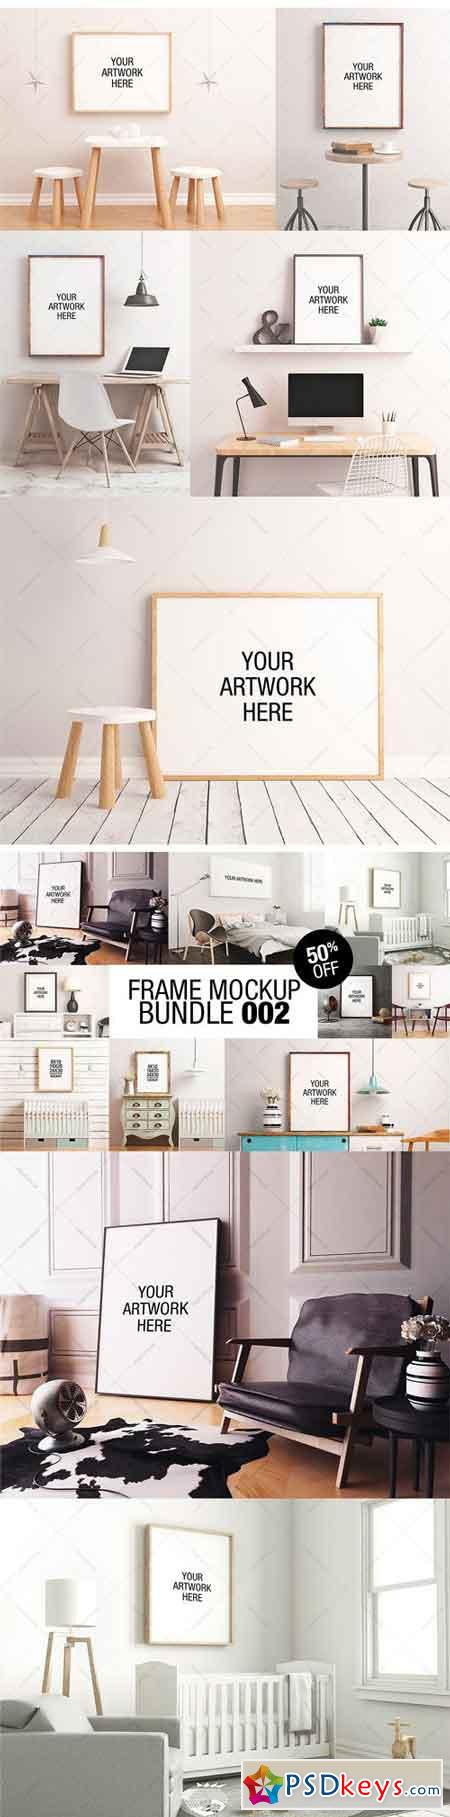 Frame Mockup Trilogy Bundle 01 1756961